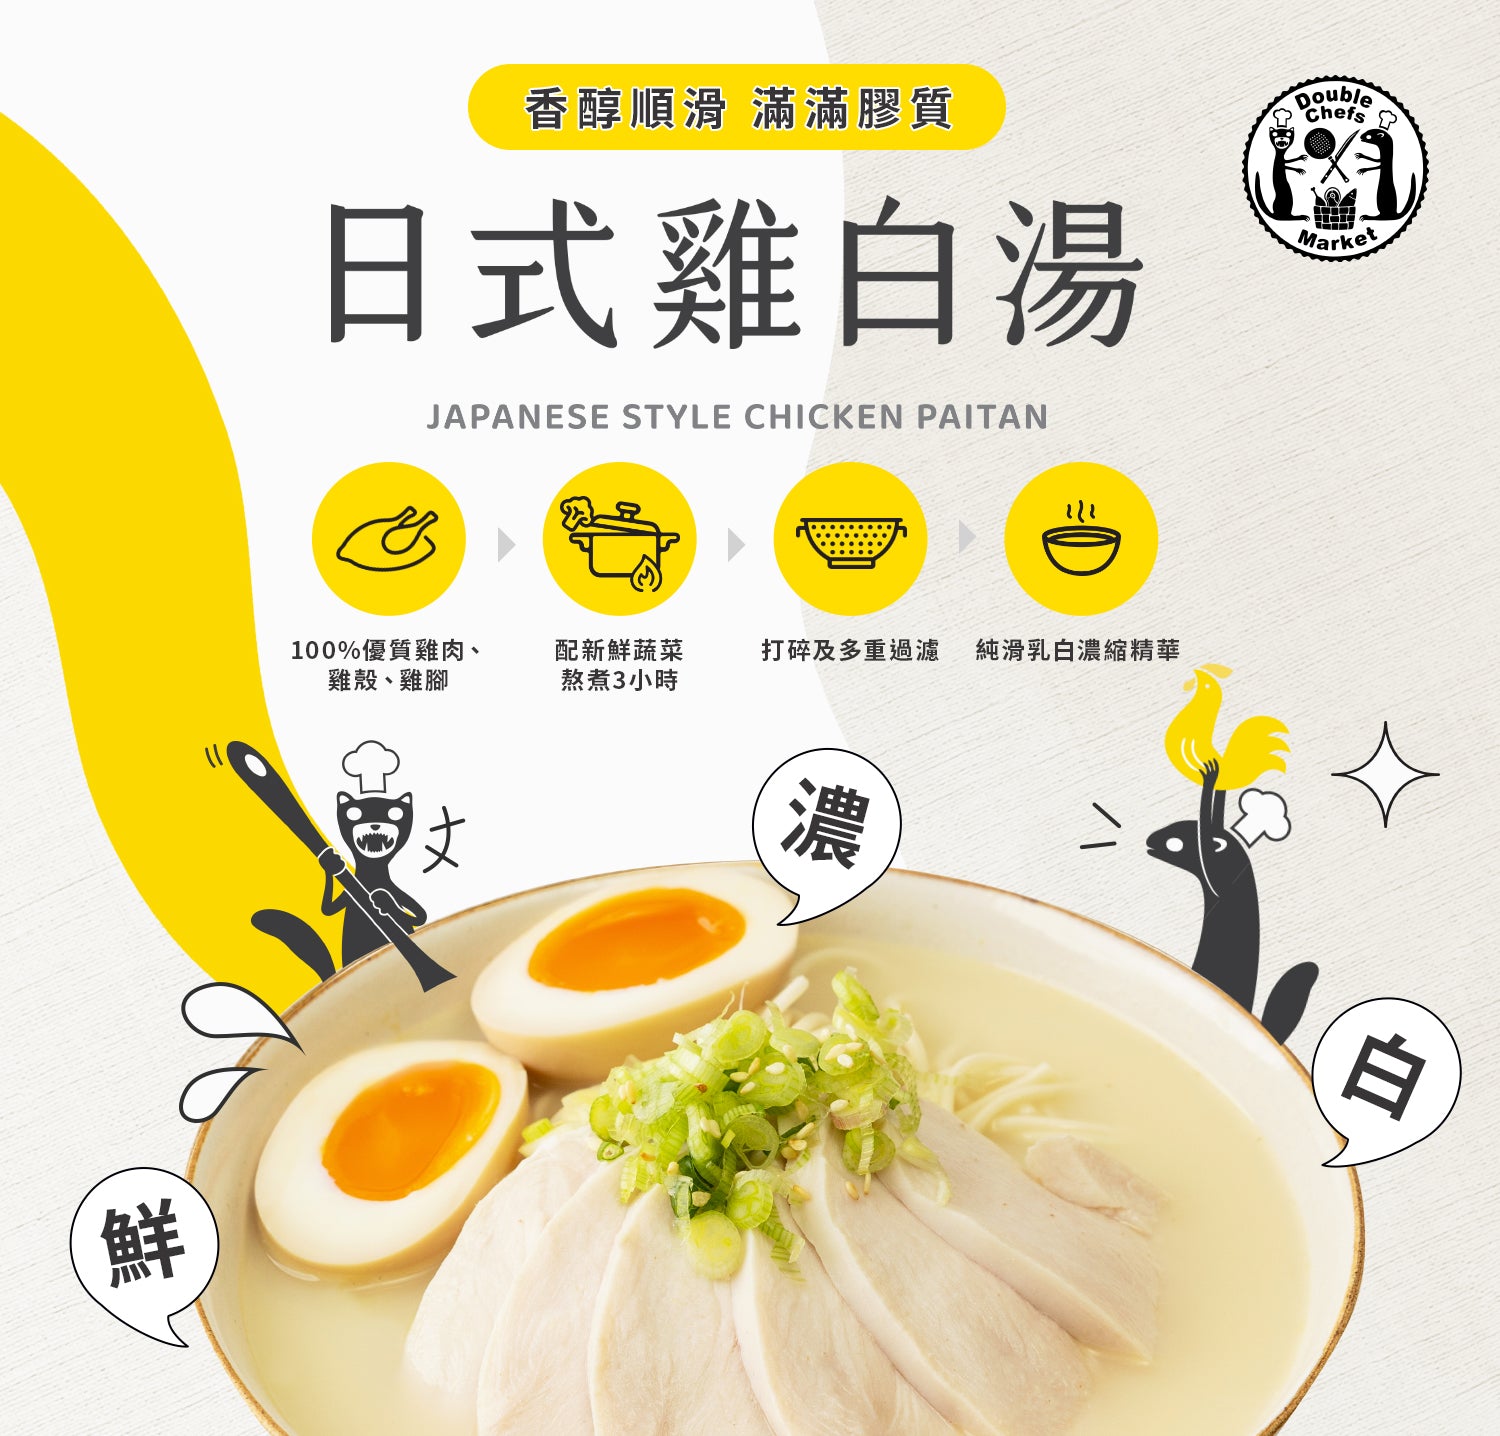 日式雞白湯｜產品特點｜Double Chefs Market｜飲得到的煮麵鍋物湯底